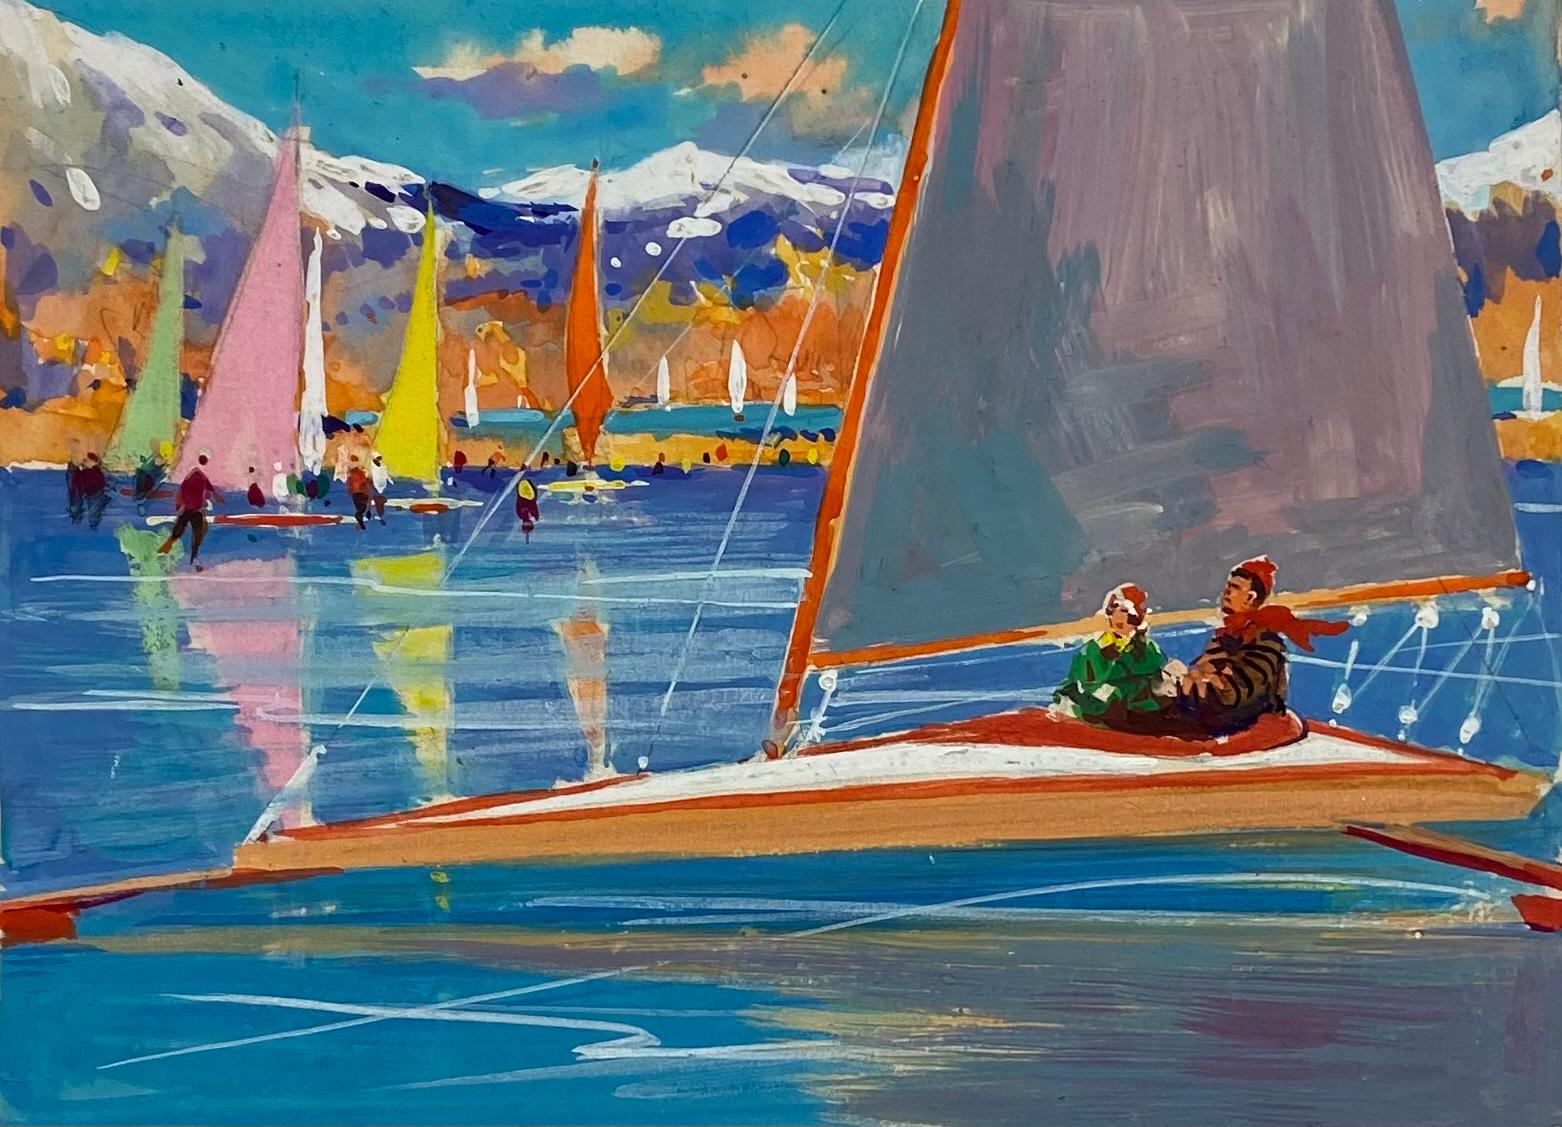 Frank Duffield Abstract Drawing – Britisches impressionistisches Gemälde des mittleren 20. Jahrhunderts, mehrfarbiges Sommerbootrennen 